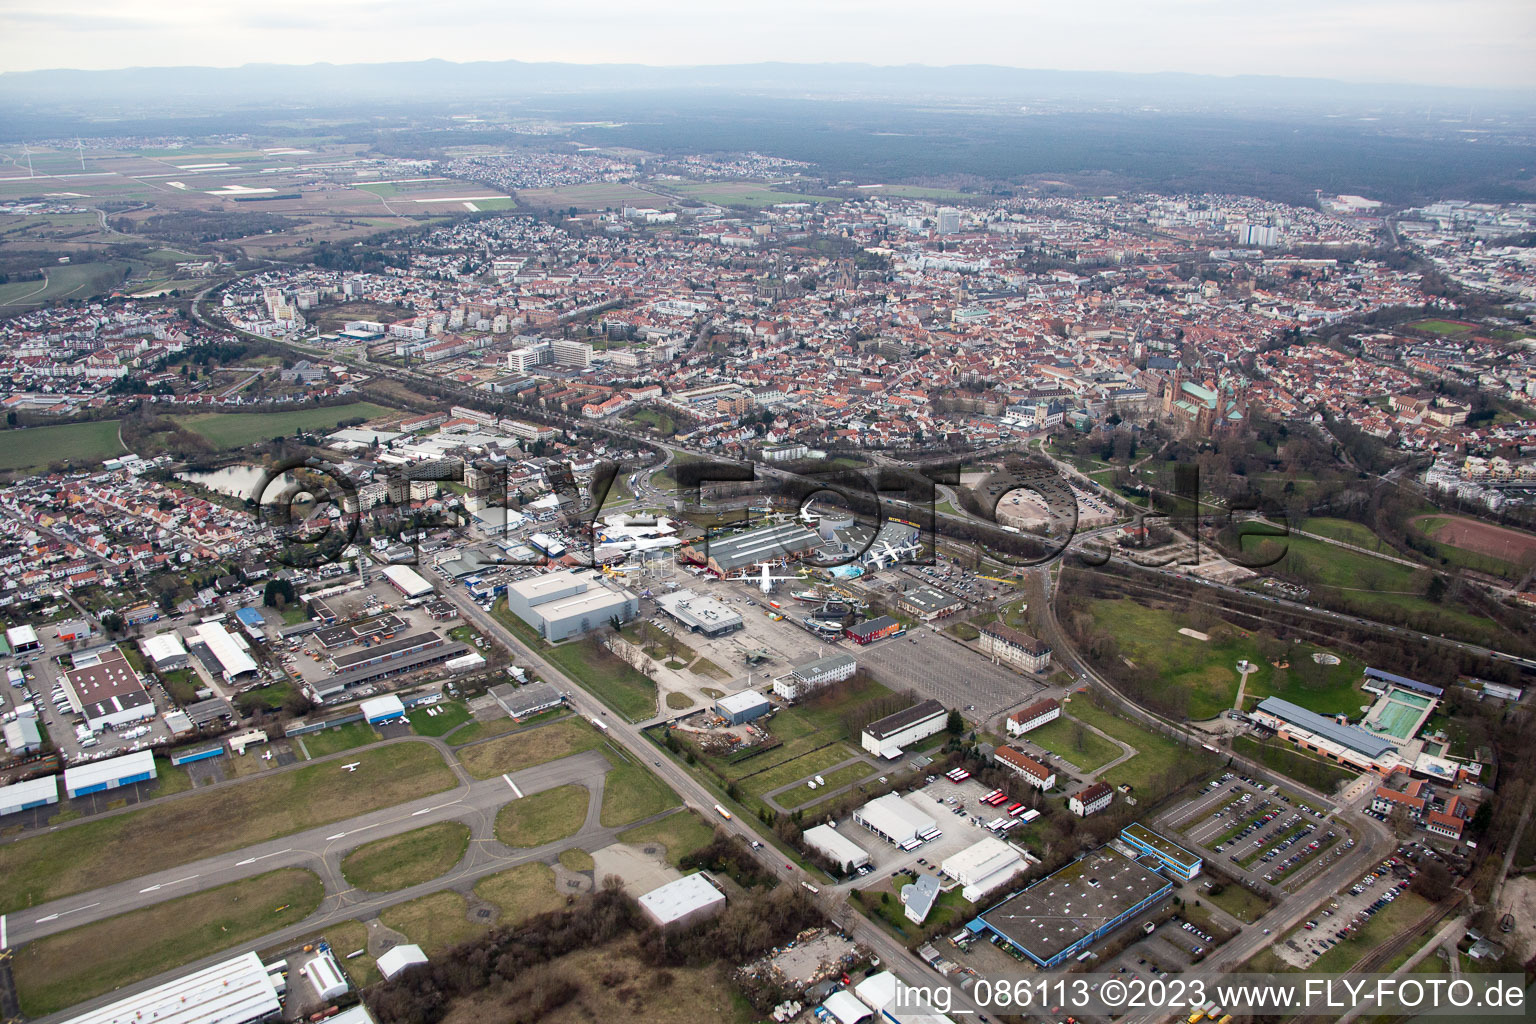 Speyer im Bundesland Rheinland-Pfalz, Deutschland von einer Drohne aus